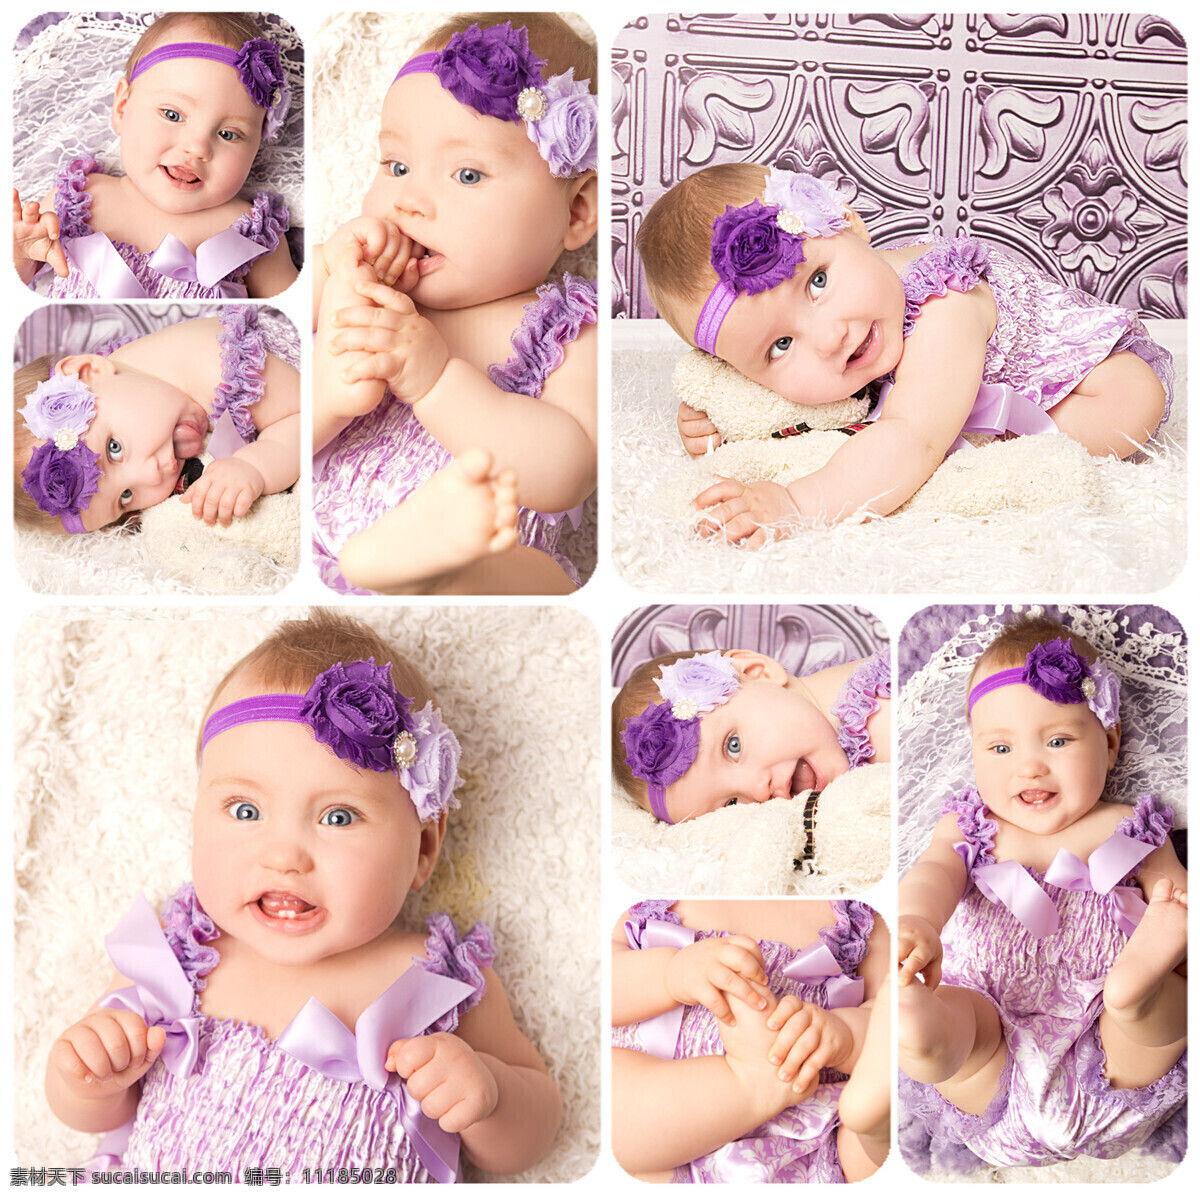 紫色 衣服 宝宝 可爱宝宝 快乐儿童 婴儿 小孩子 baby 儿童幼儿 宝宝摄影 宝宝图片 人物图片